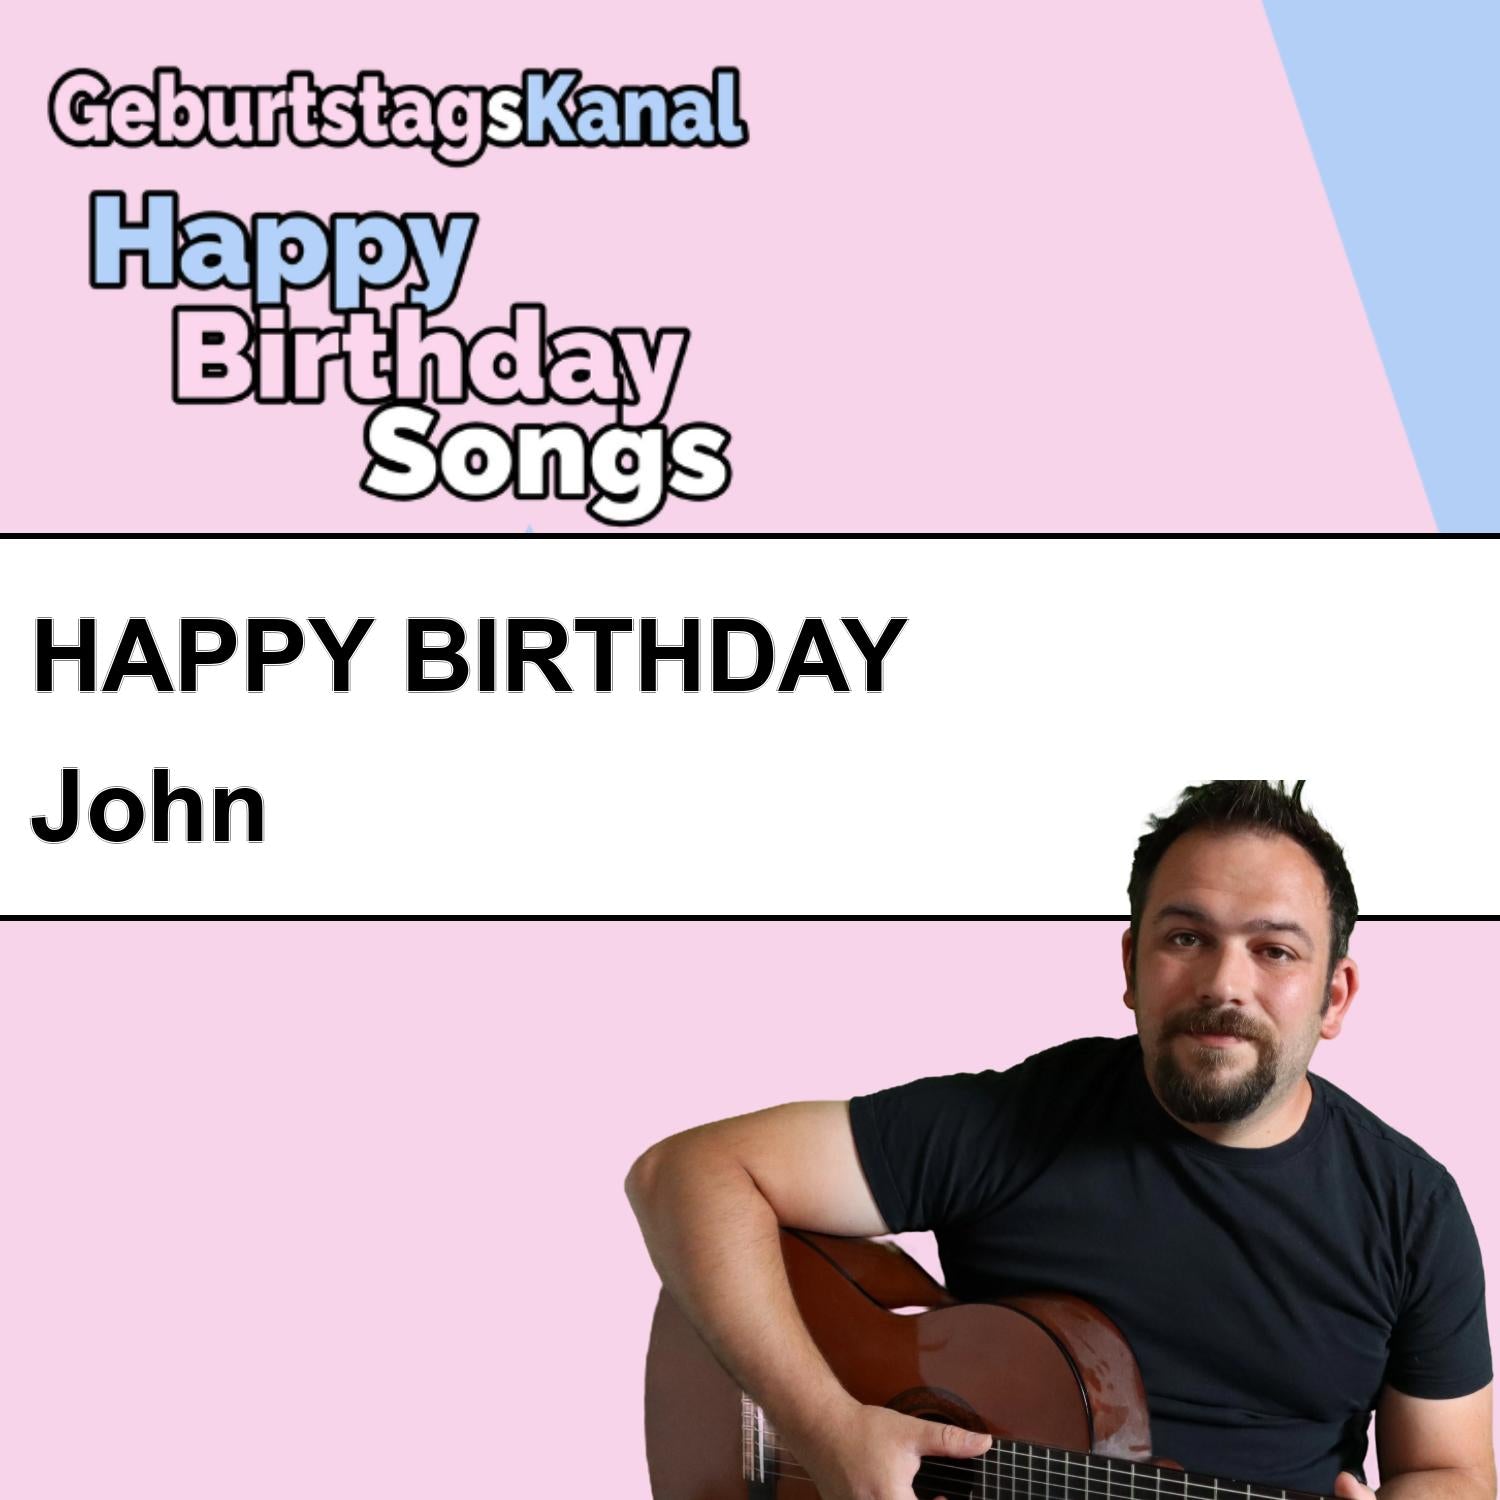 Produktbild Happy Birthday to you John mit Wunschgrußbotschaft